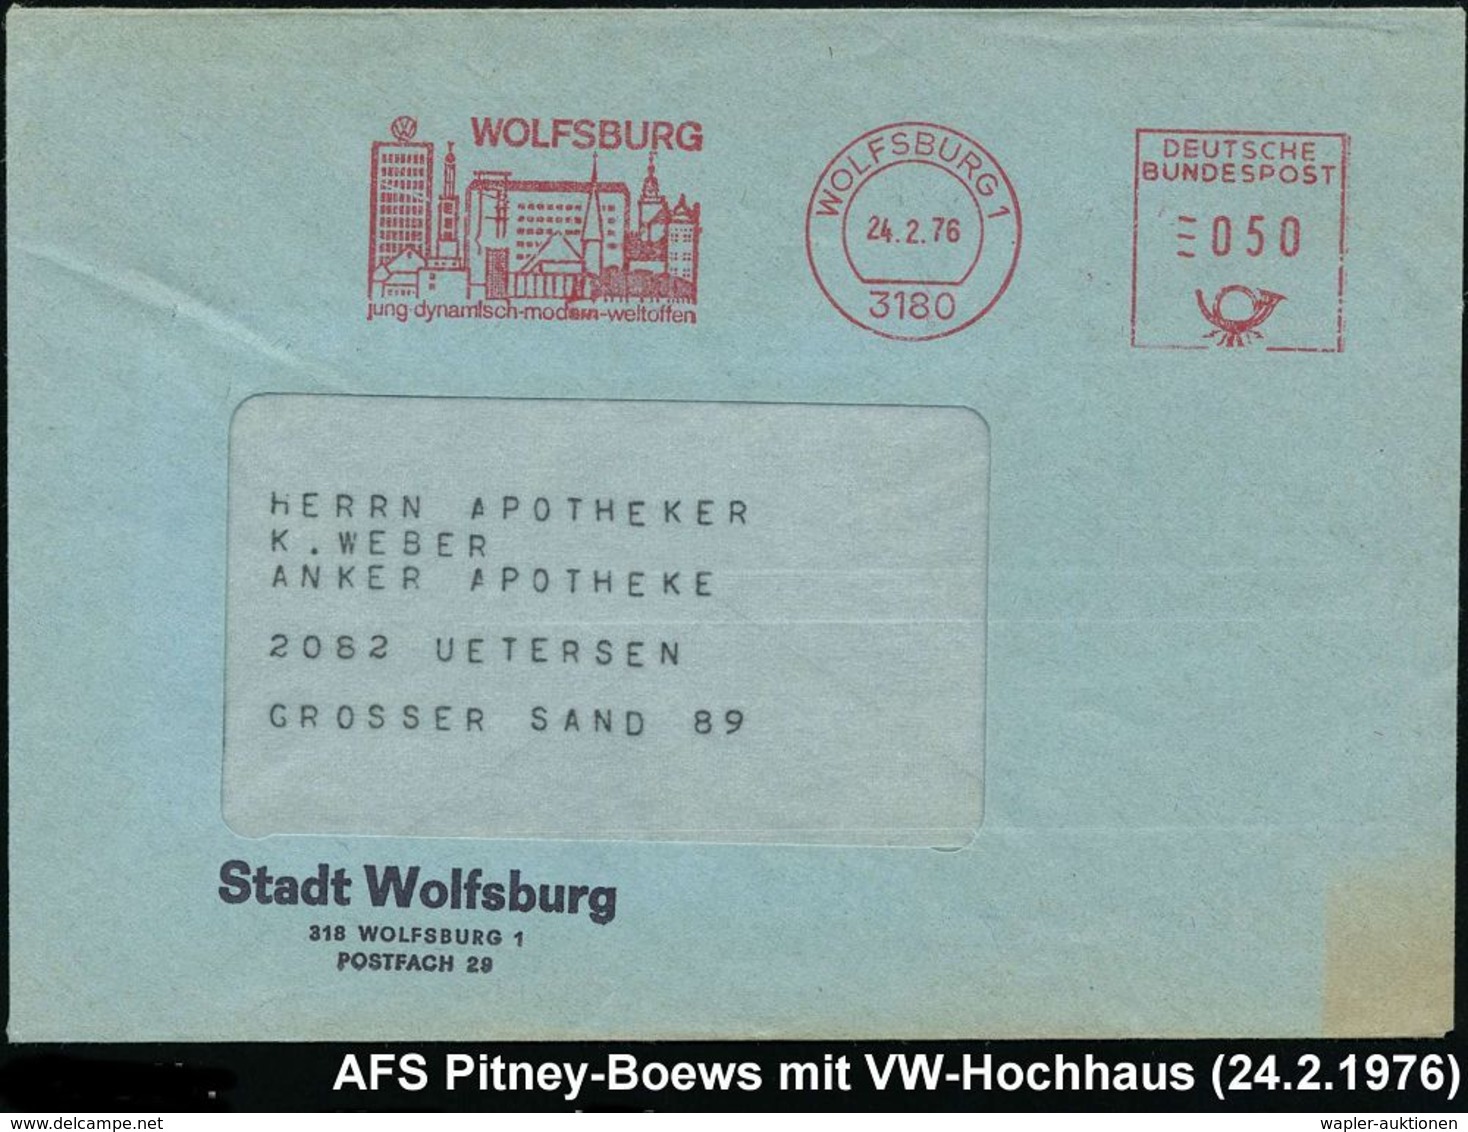 VOLKSWAGEN / VW / K.-D.-F.-WAGEN / PORSCHE : 3180 WOLFSBURG 1/ Jung-dynamisch.. 1976 (24.2.) AFS = Ortsbild Mit VW-Hochh - Autos